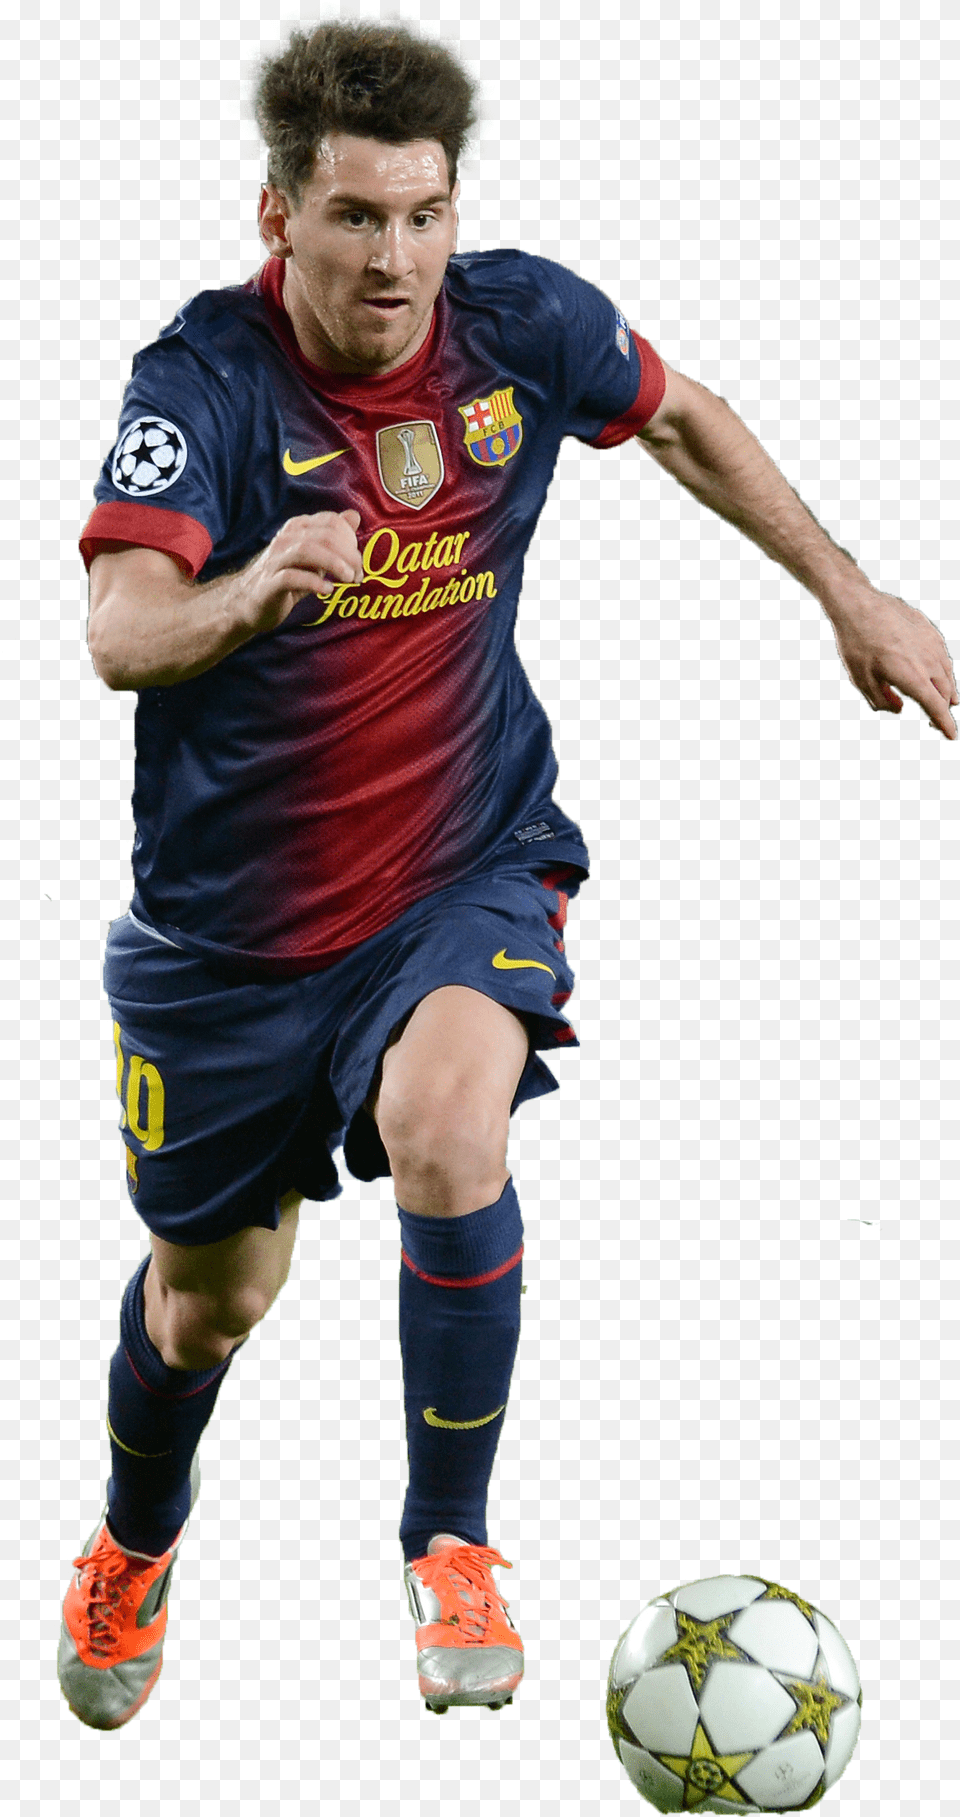 Lionel Messi Picha Za Wachezaji Wa Barca, Ball, Sport, Sphere, Soccer Ball Png Image